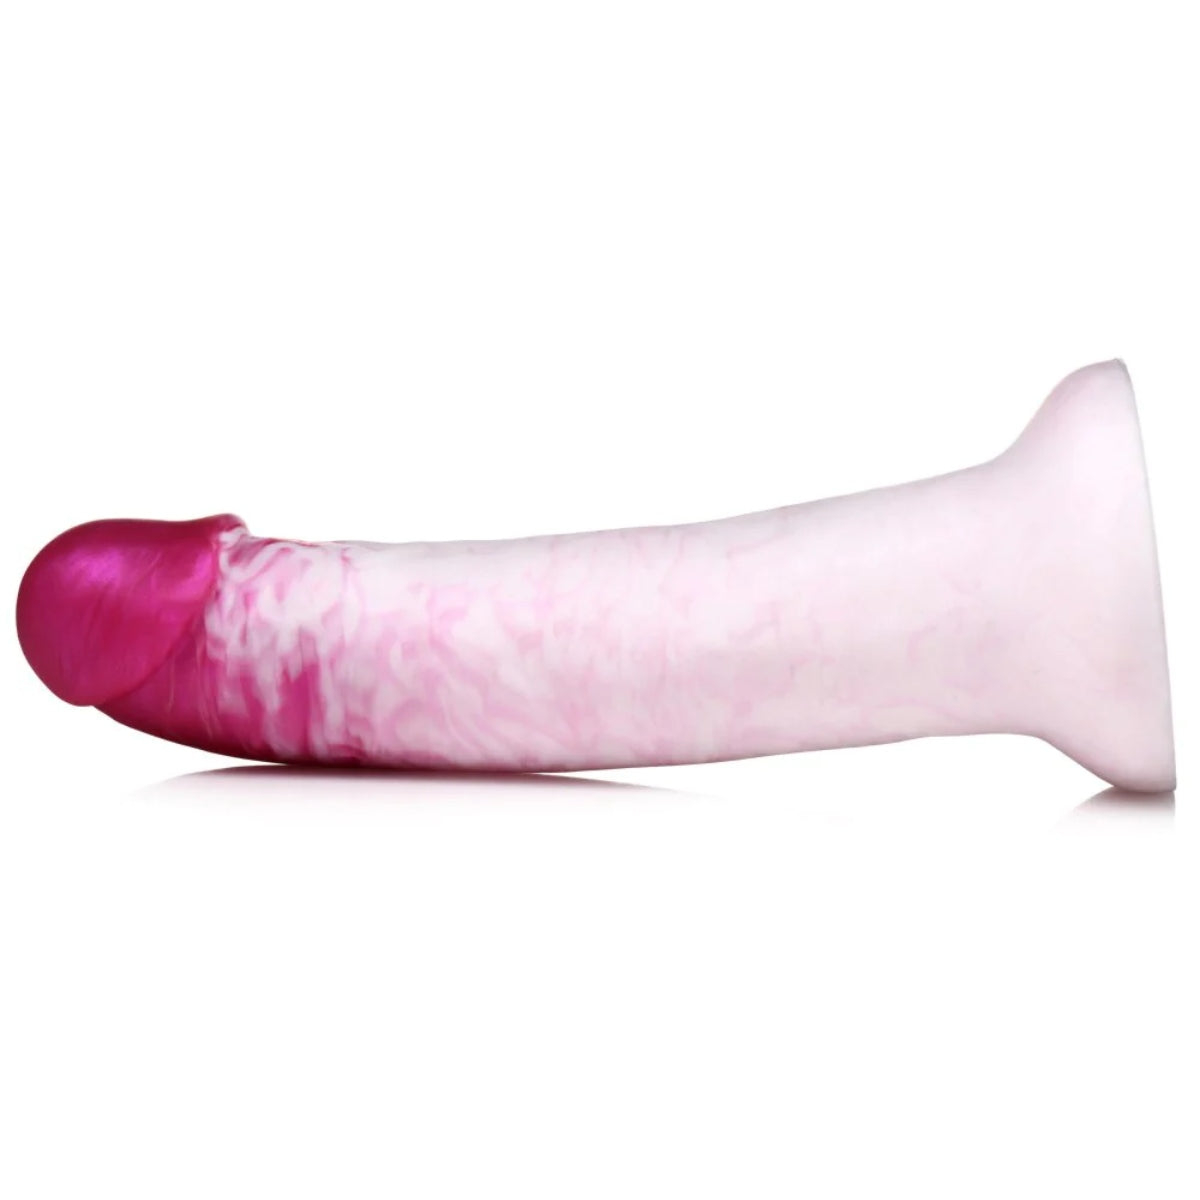 Strap U Real Swirl Realistic Silicone Dildo Pink White 6.9 Inch